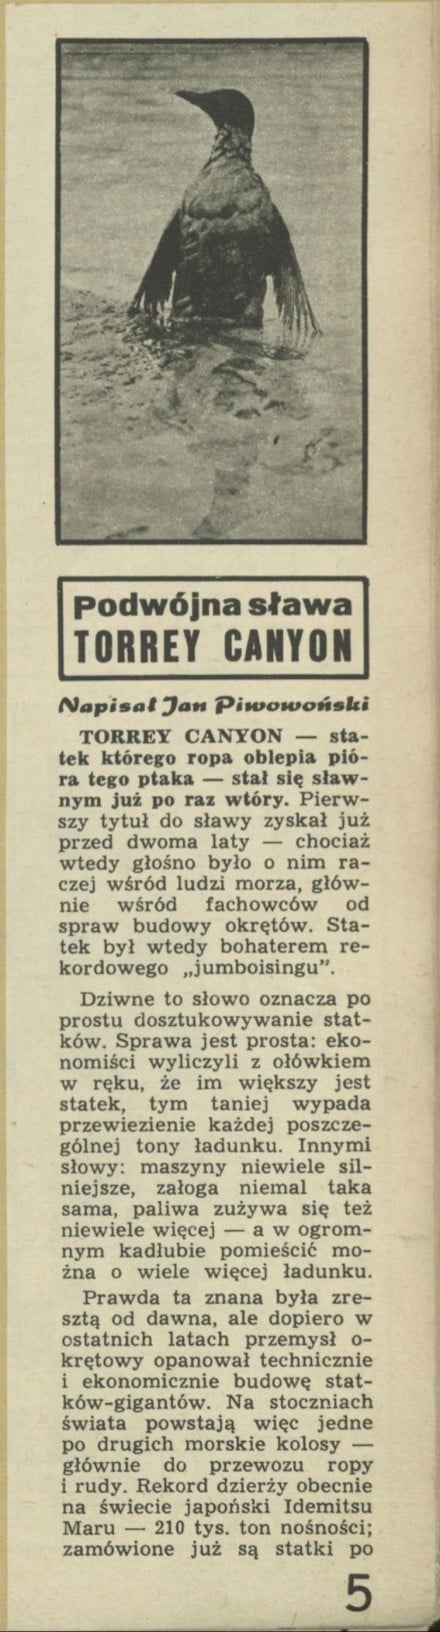 Podwójna sława Torrey Canyon